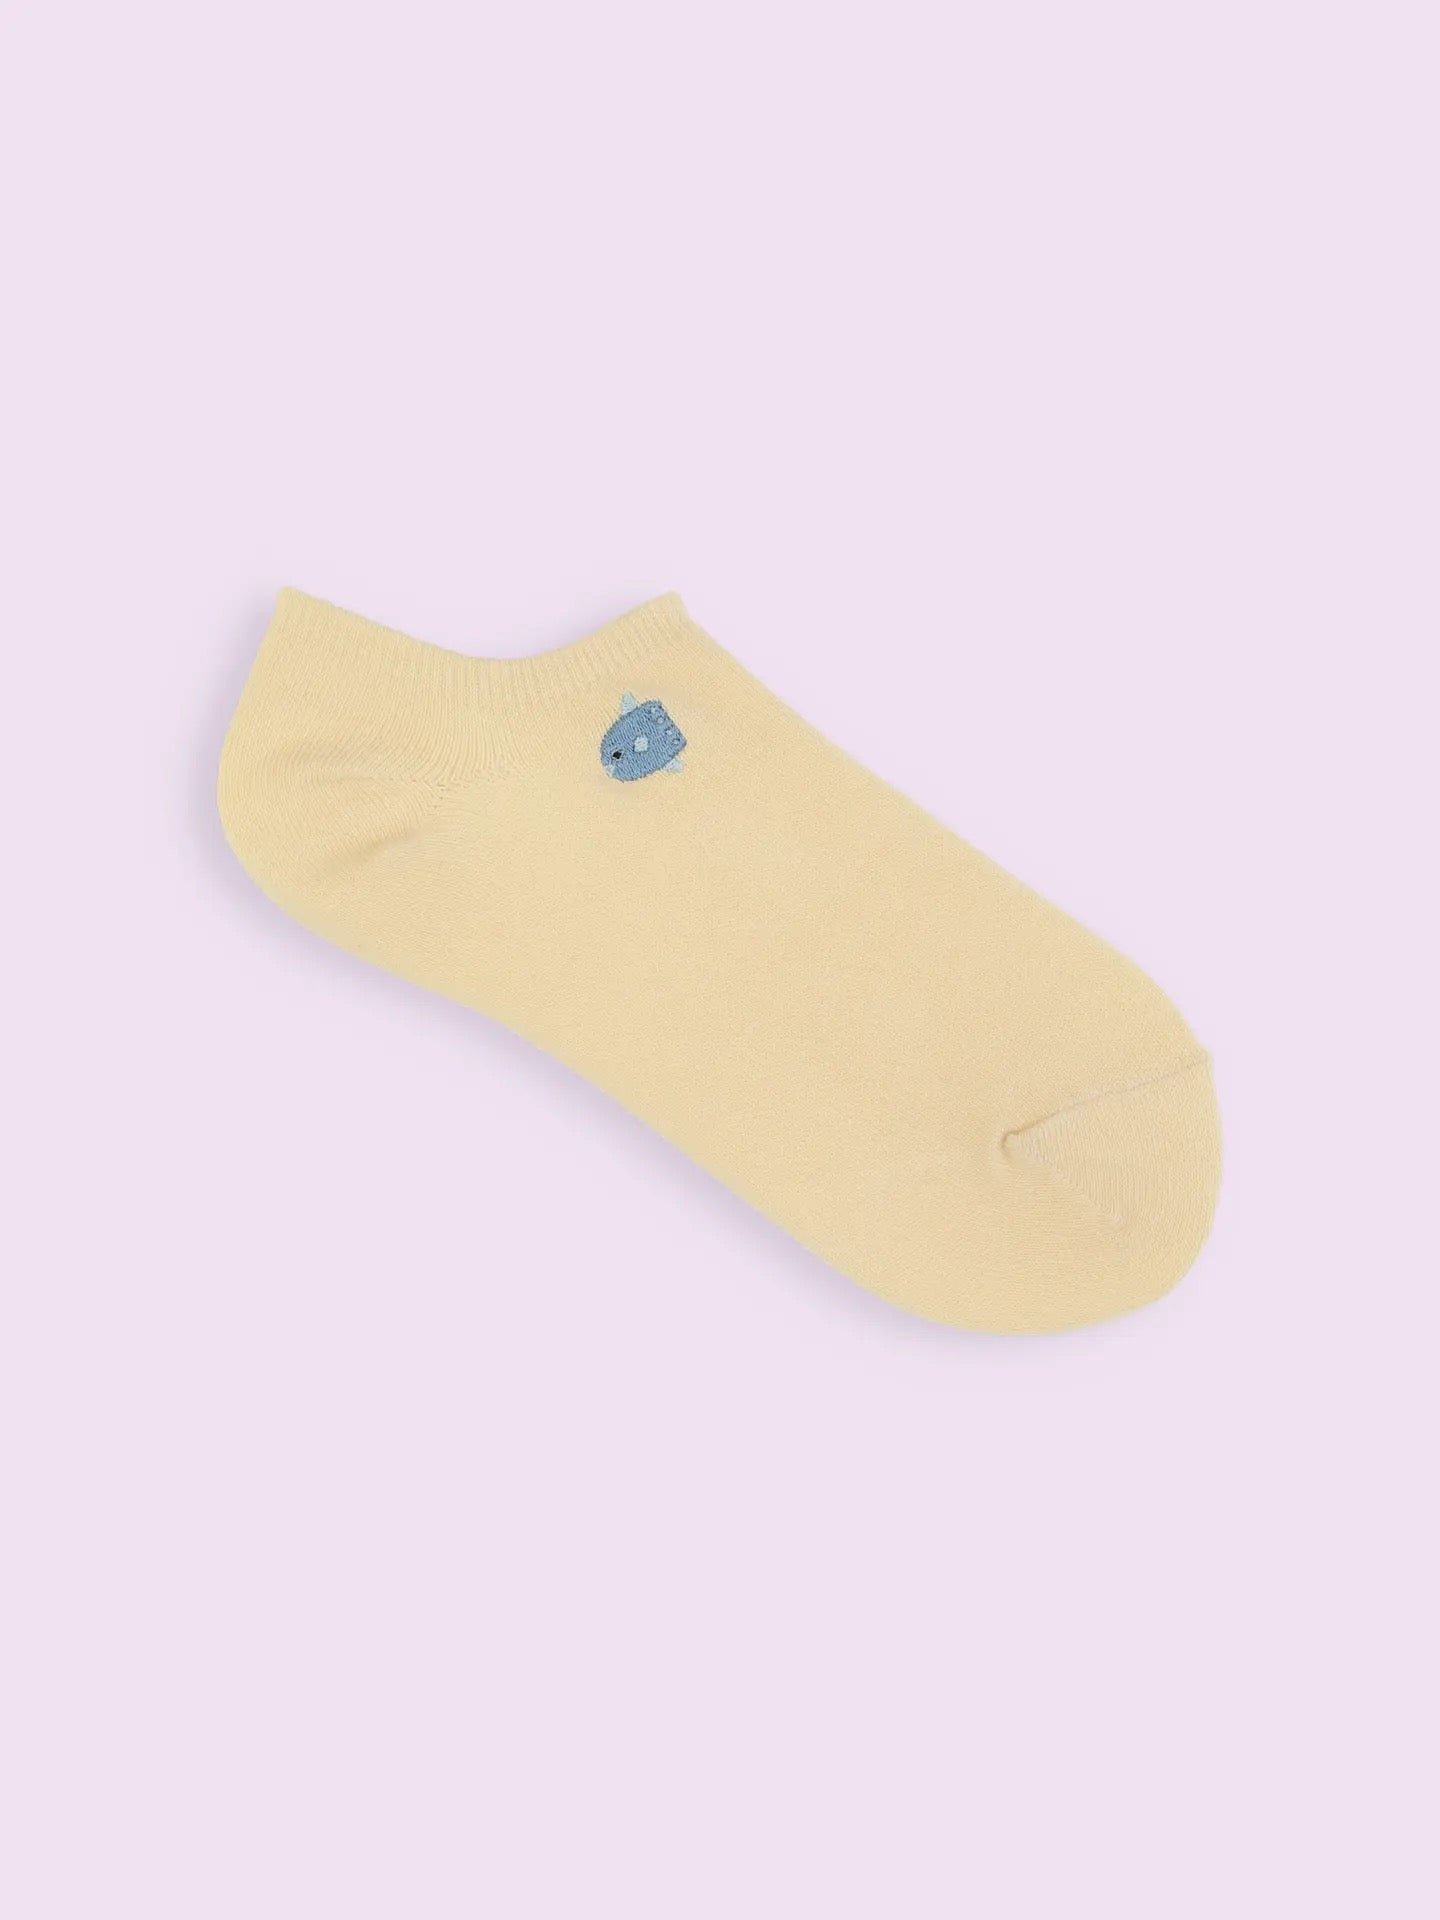 靴下屋Tabio海洋动物图案刺绣舒适低帮袜 17色选